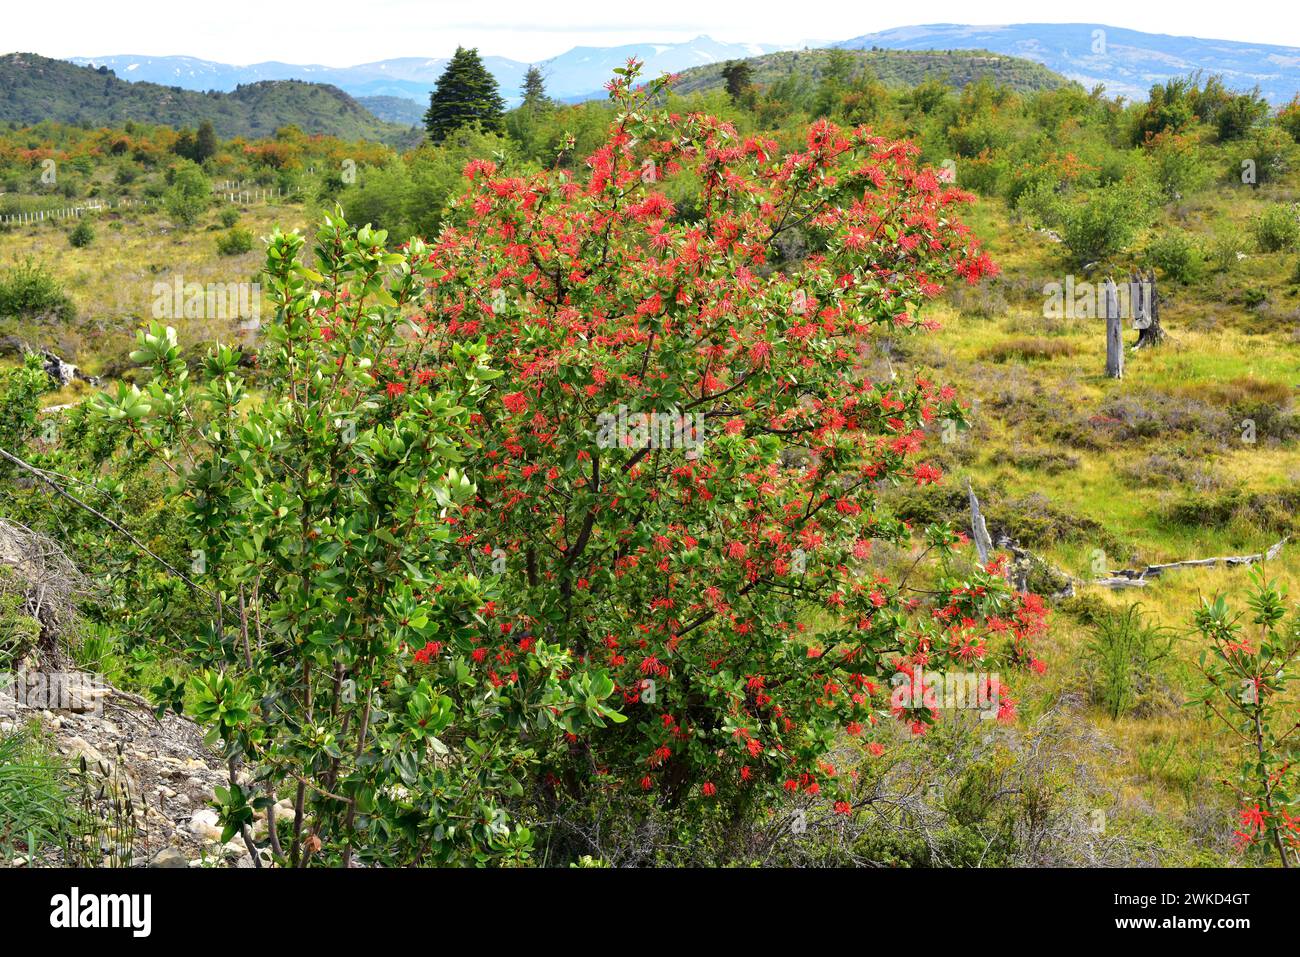 Notro oder chilenischer Feuerbaum (Embothrium coccineum) ist ein kleiner immergrüner Baum, der in den gemäßigten Regionen Chiles und Argentiniens beheimatet ist. Dieses Foto wurde aufgenommen Stockfoto